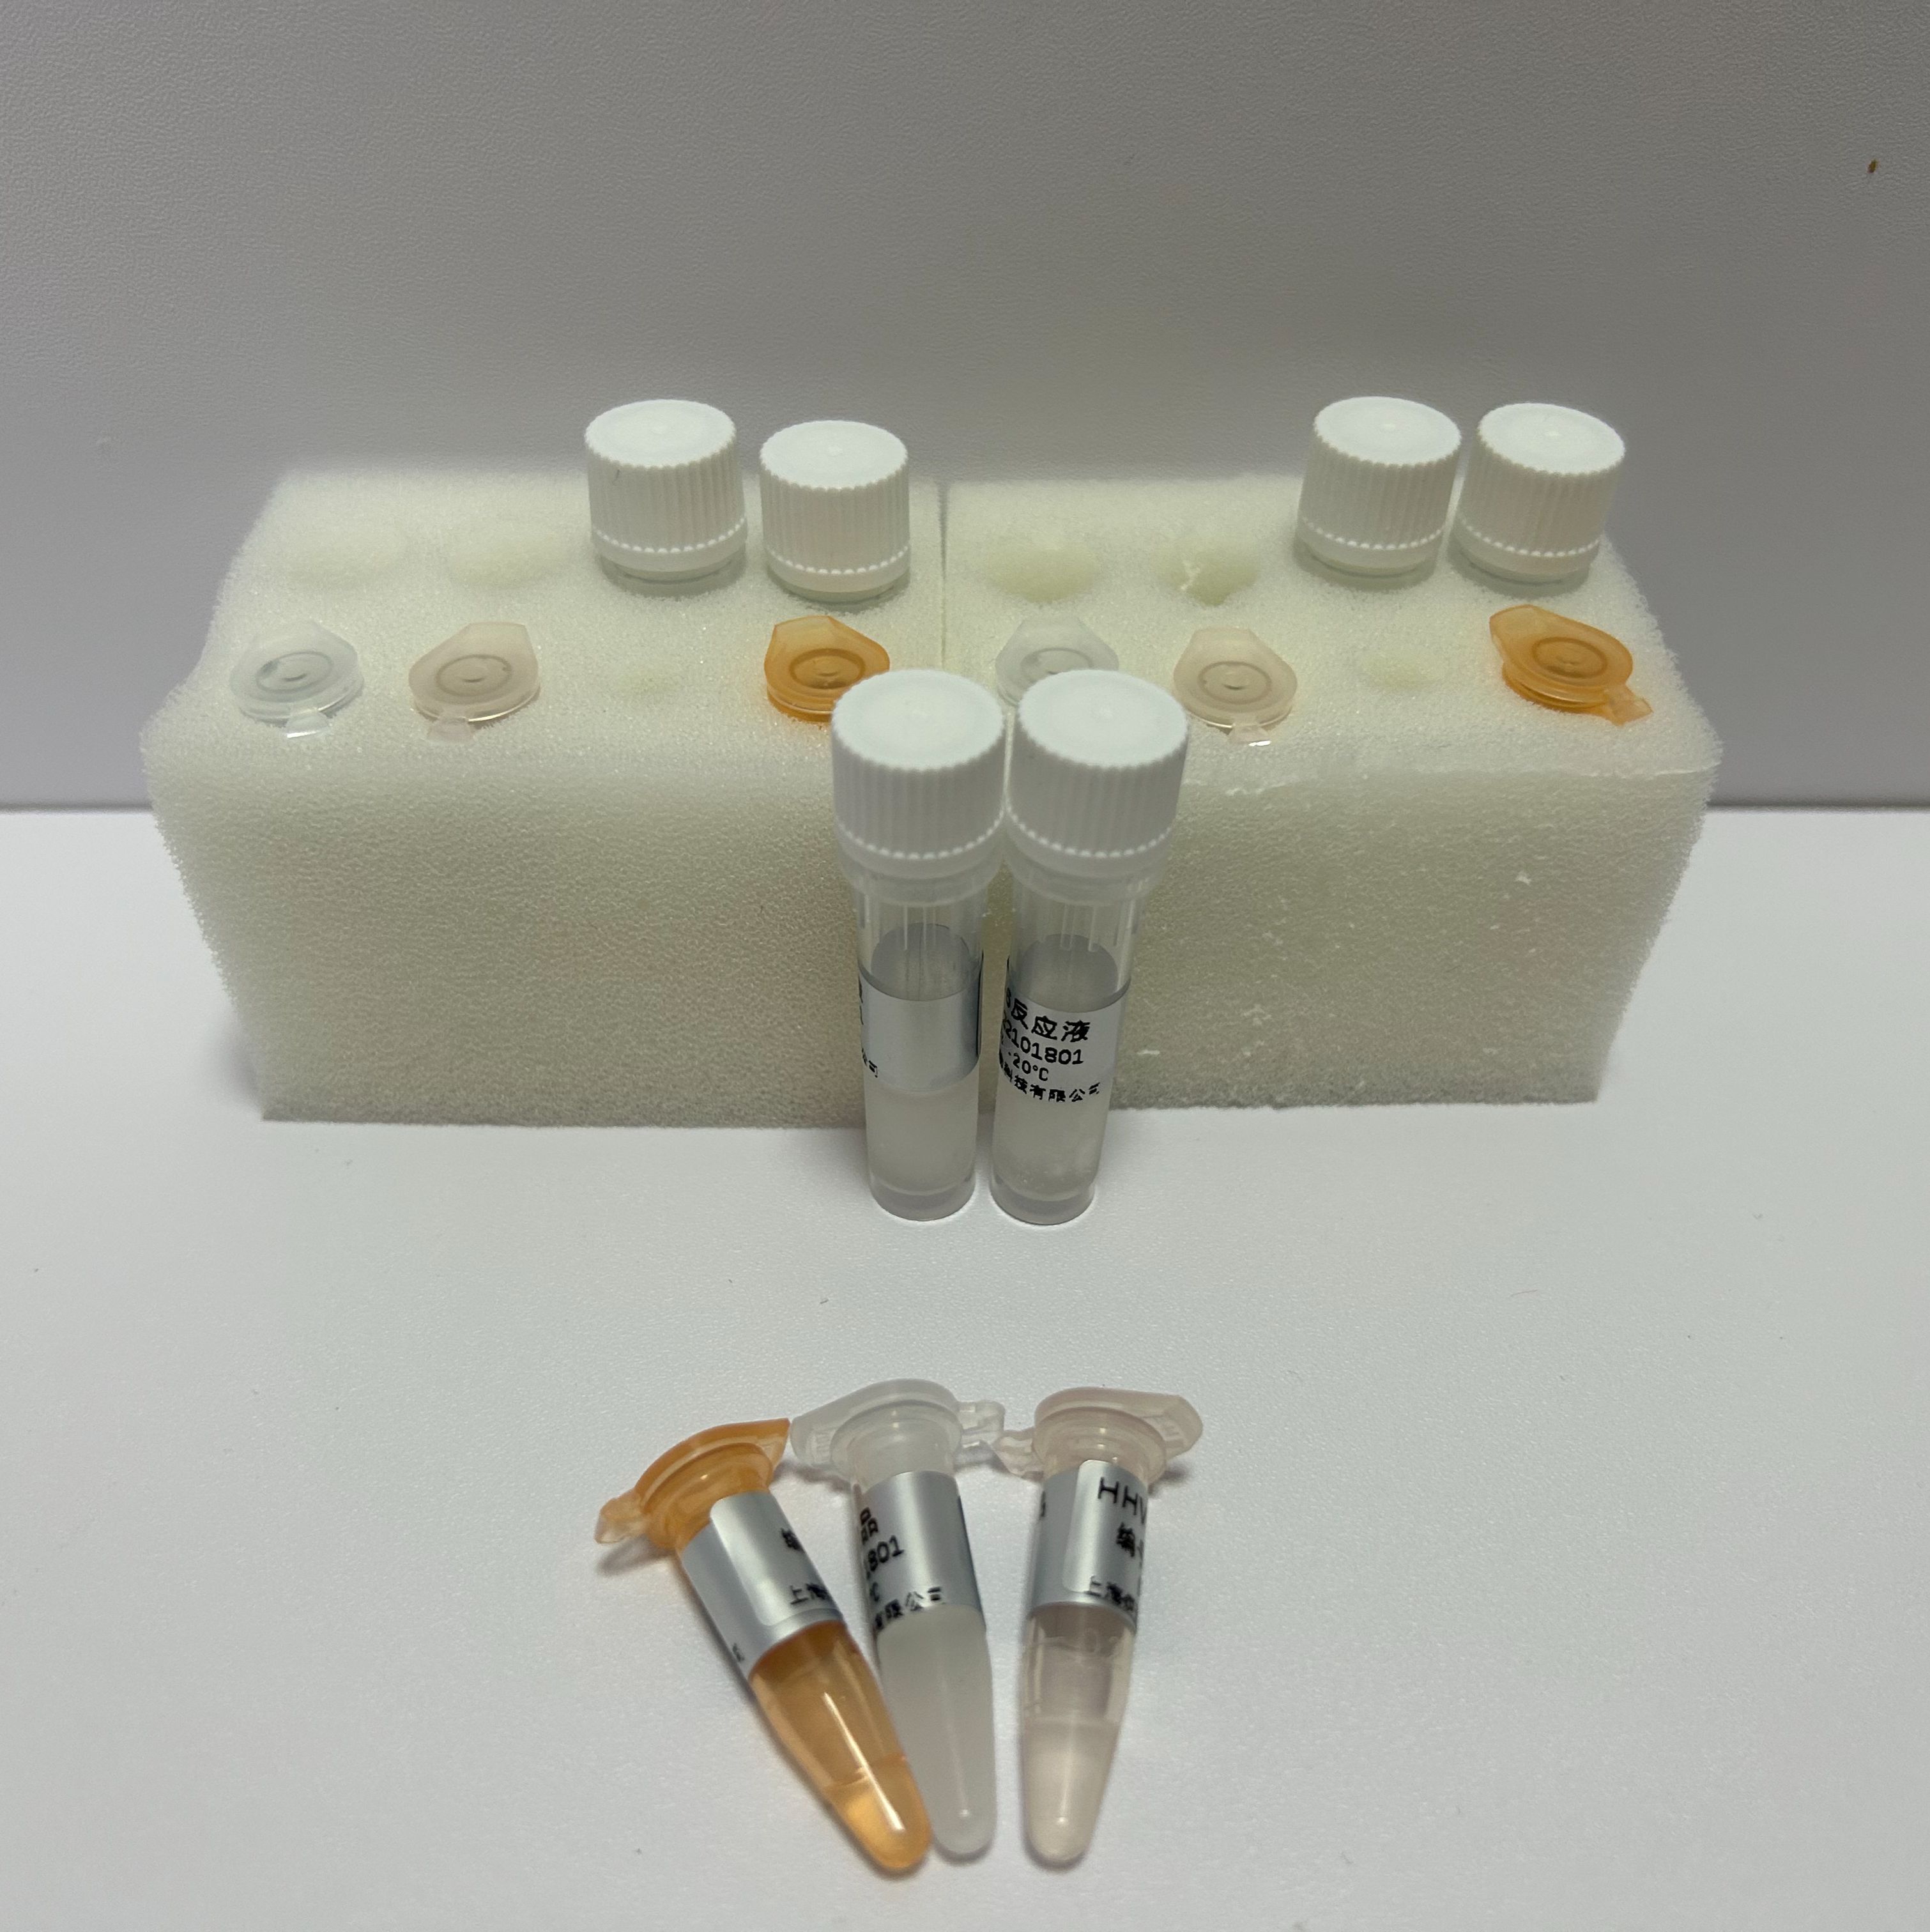 空肠弯曲杆菌PCR试剂盒